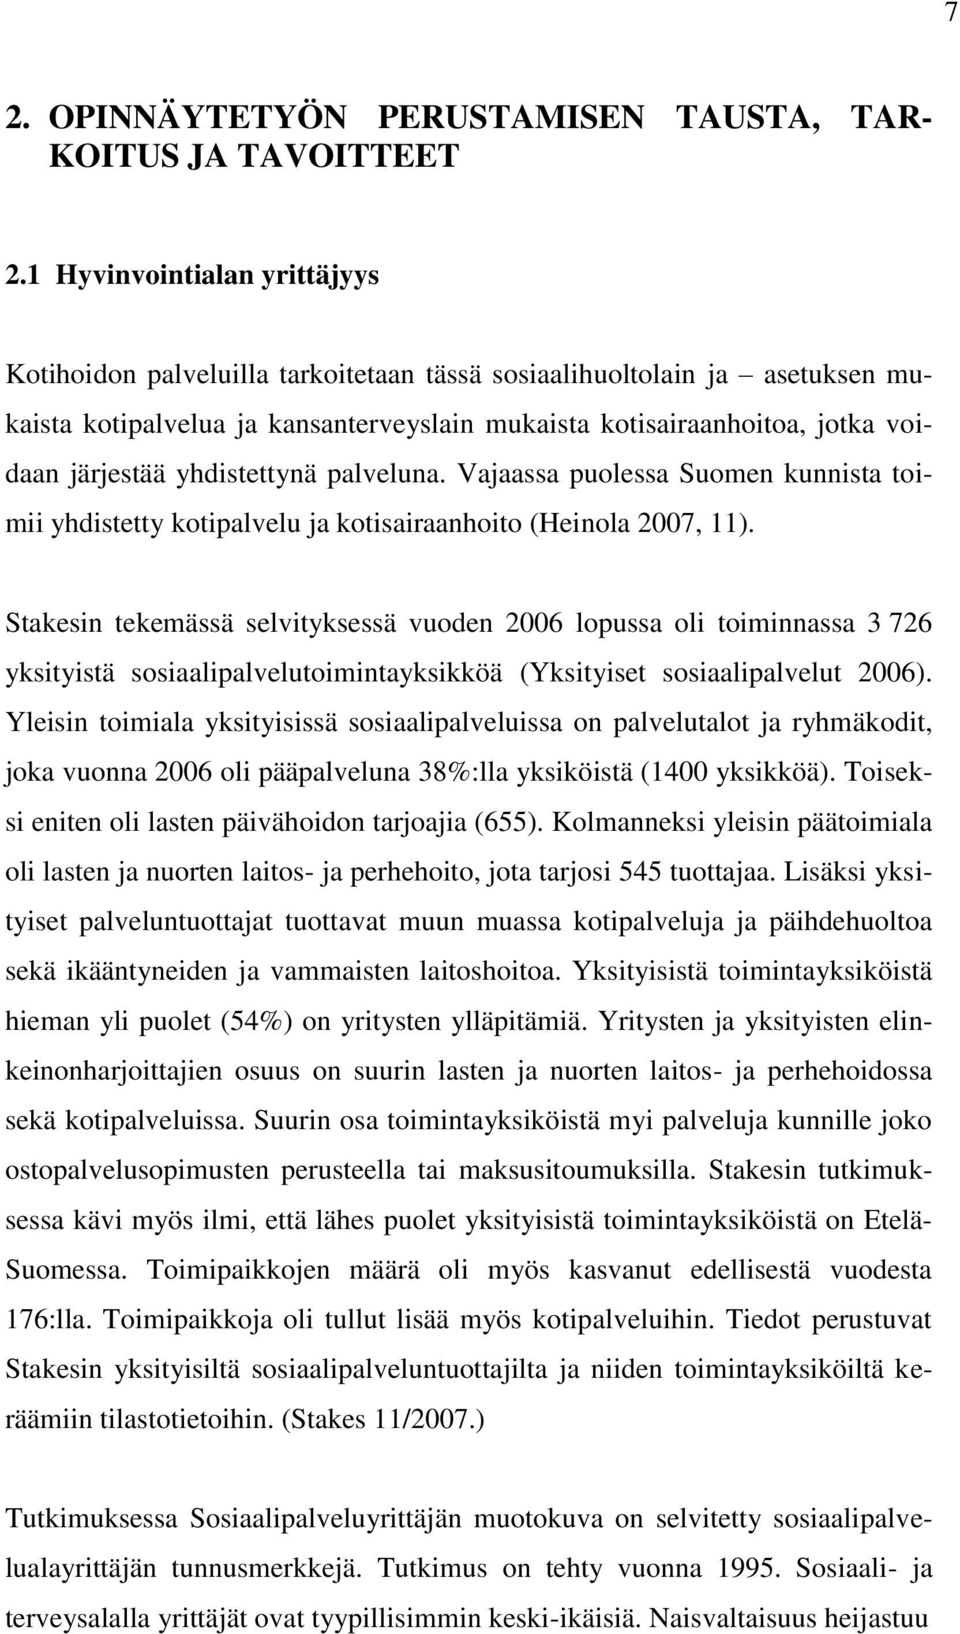 yhdistettynä palveluna. Vajaassa puolessa Suomen kunnista toimii yhdistetty kotipalvelu ja kotisairaanhoito (Heinola 2007, 11).